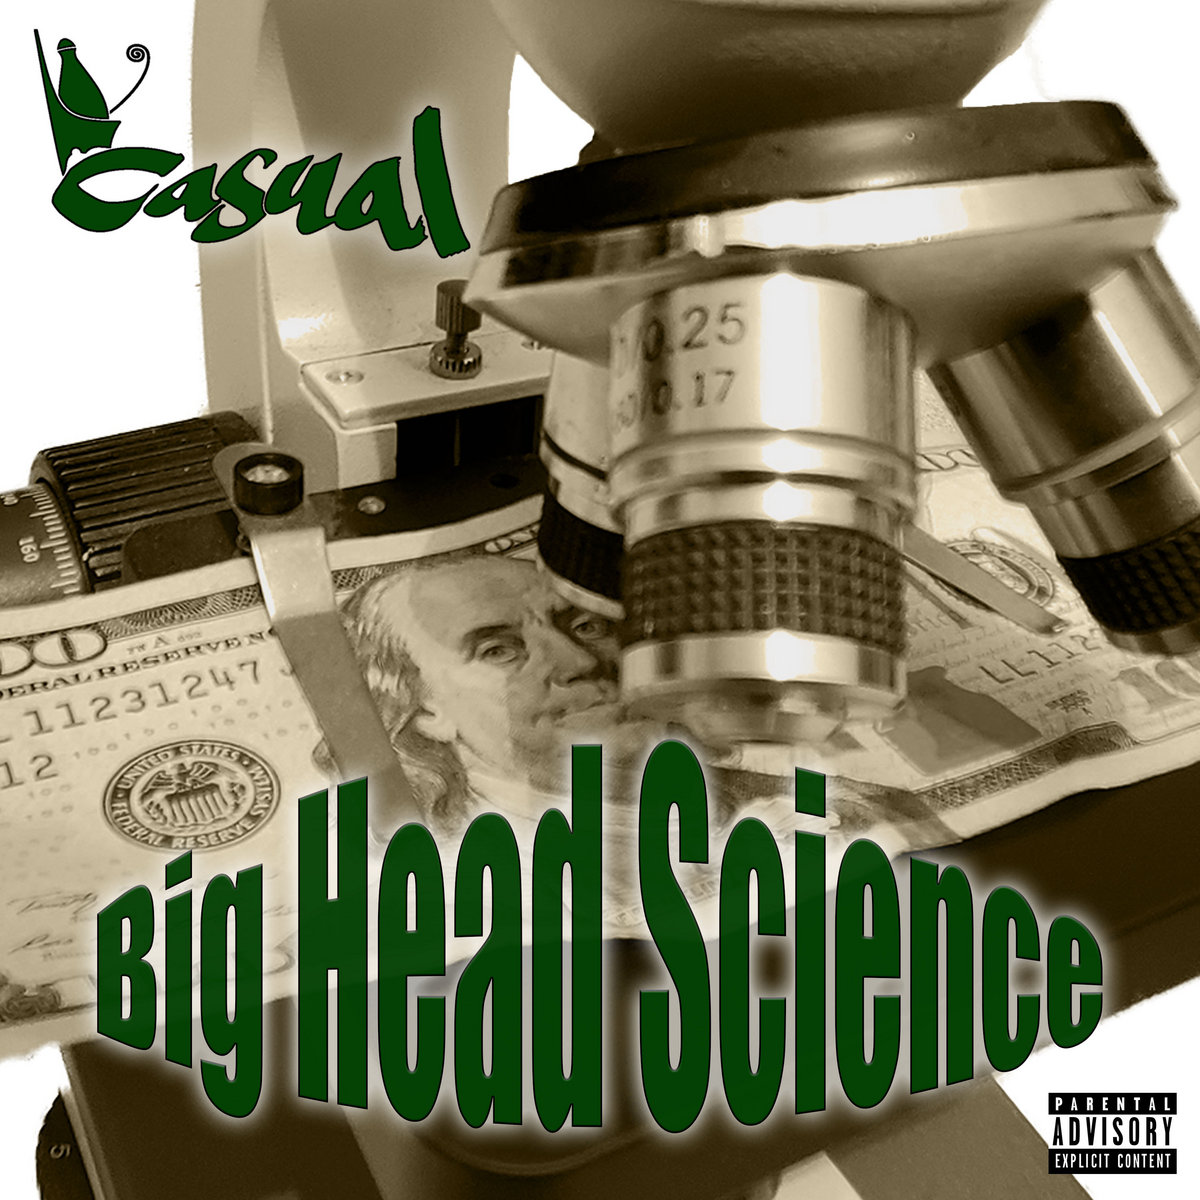 Big_head_science_casual